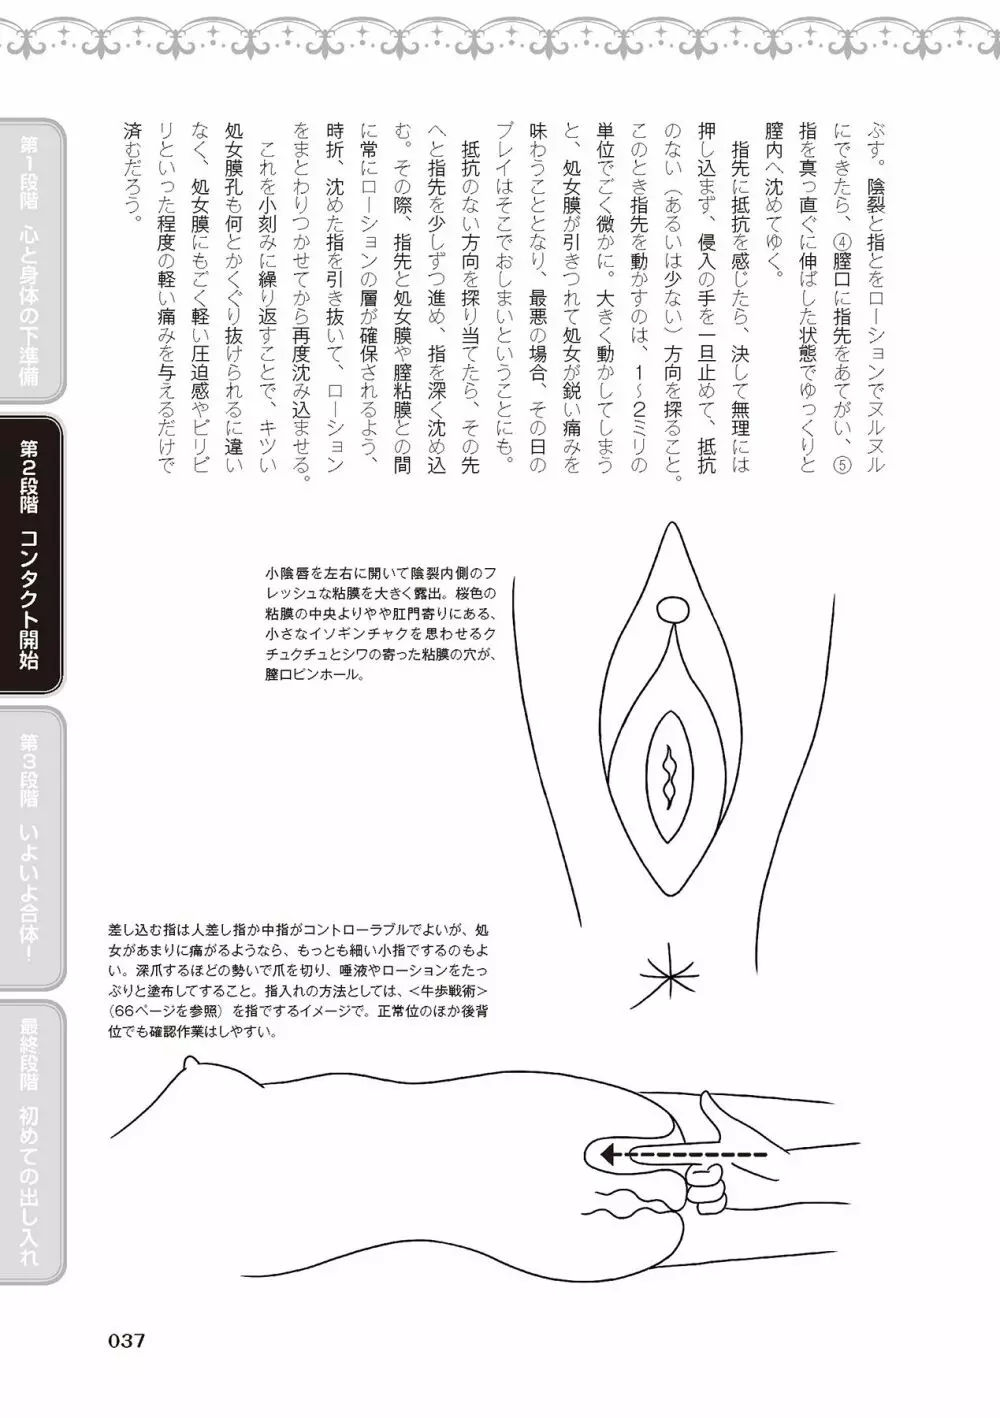 処女喪失・ロストヴァージンSEX完全マニュアル イラスト版……初エッチ 39ページ